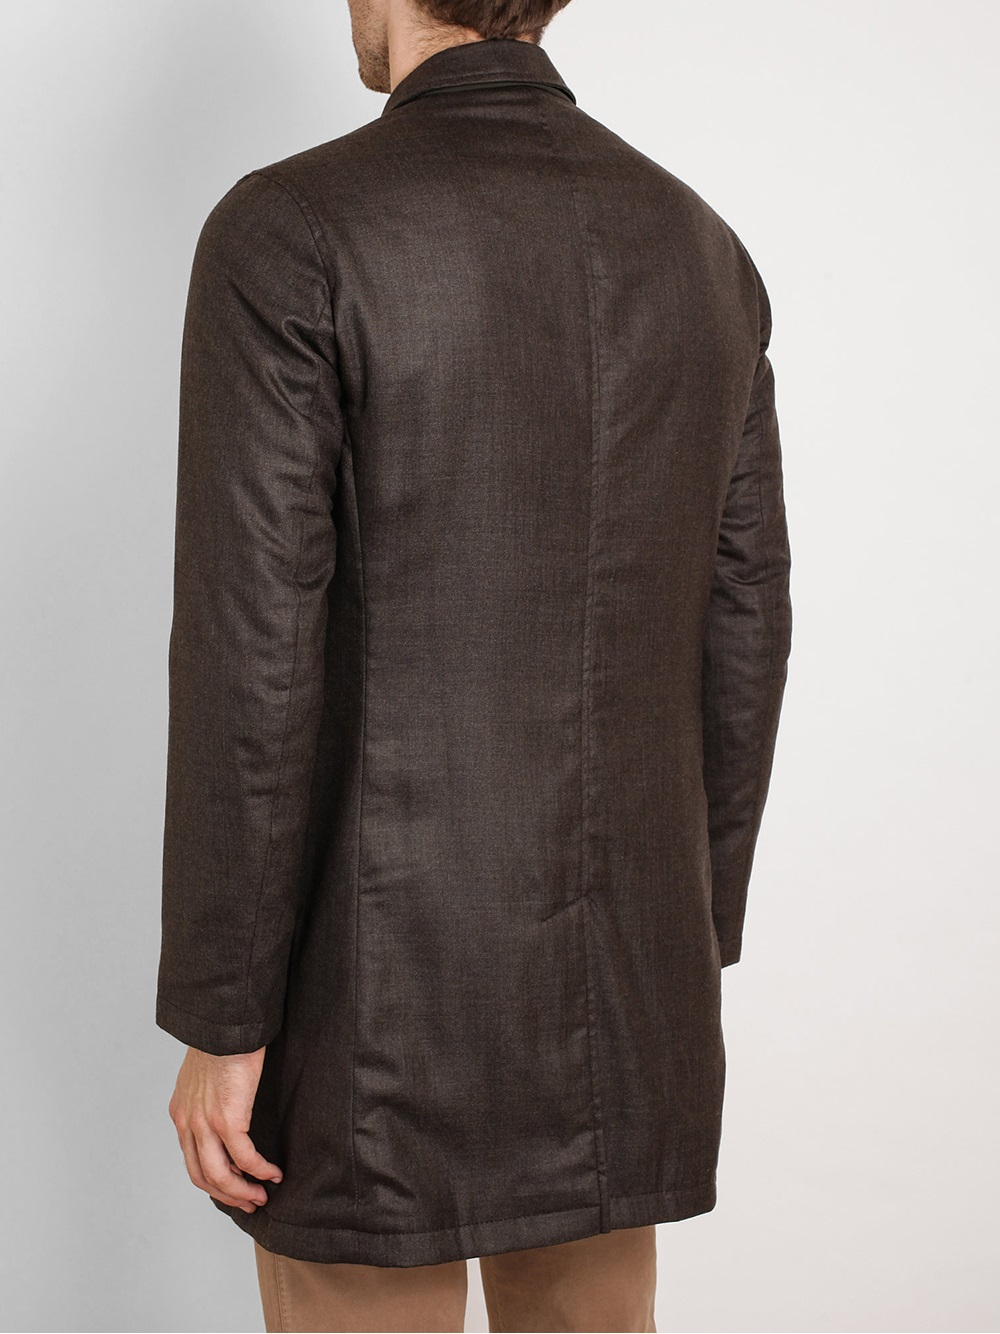 Lardini Reversible Wool Coat in Brown for Men | Lyst